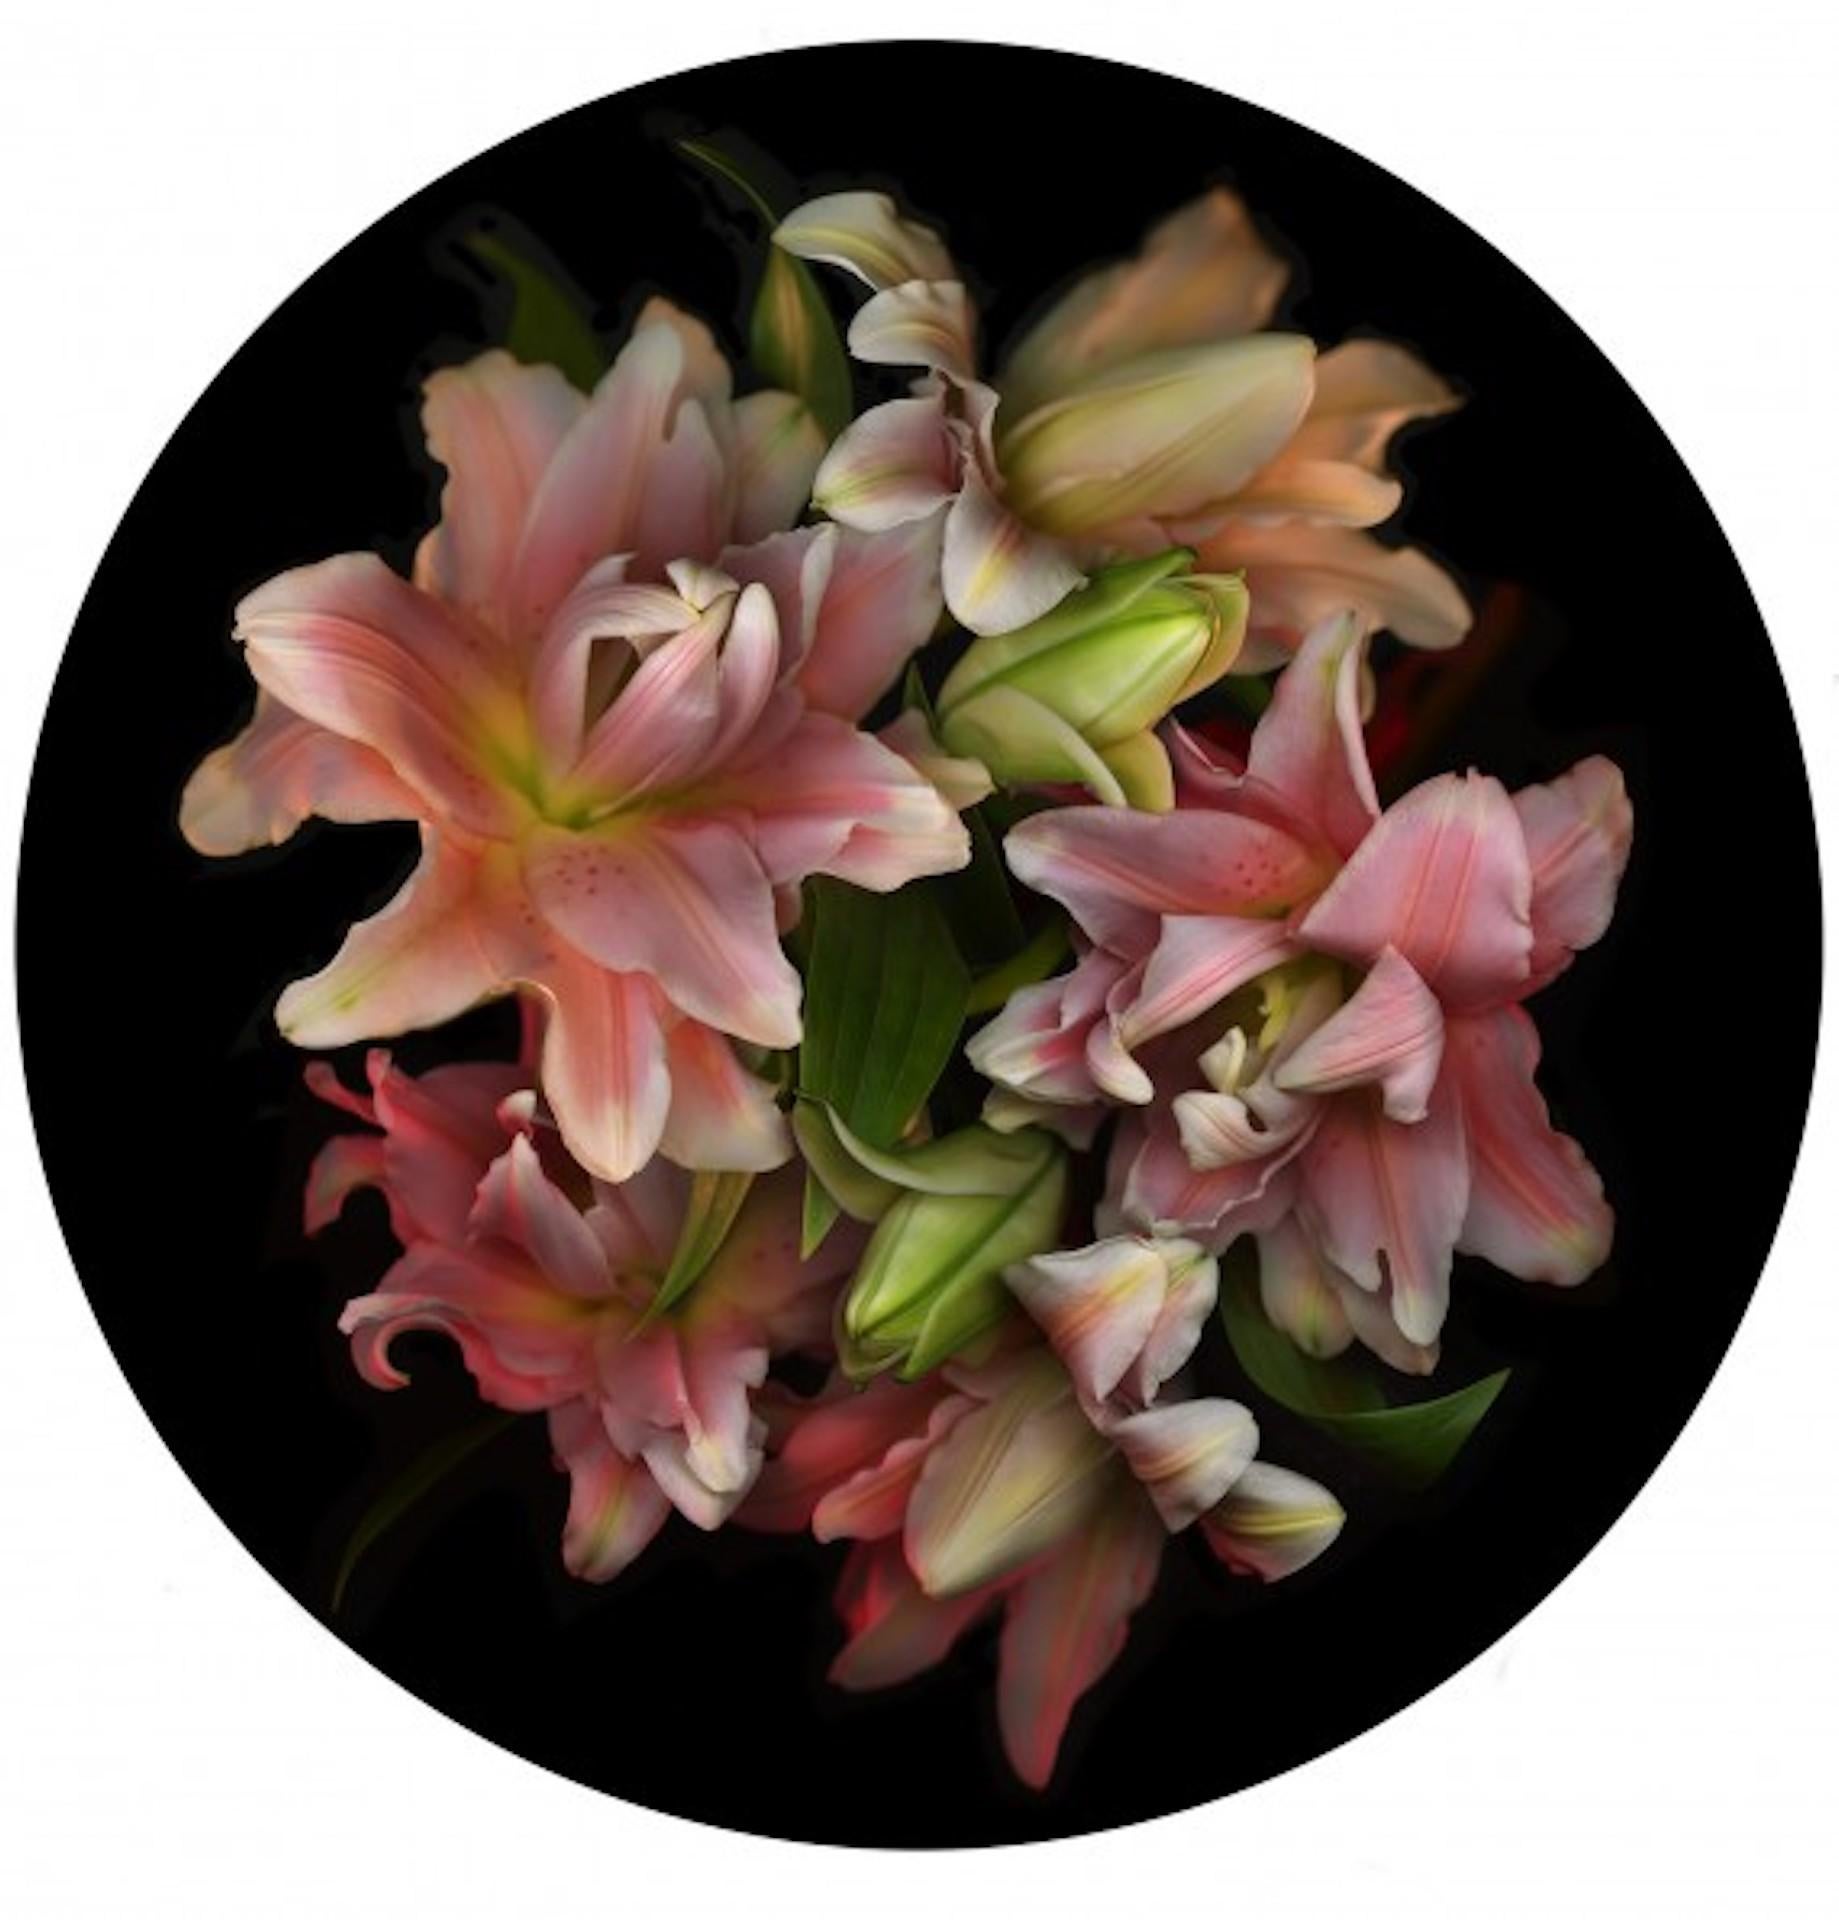 Flora Odyssey n°6, Allan Forsyth, Impression photographique florale, Édition limitée d'art